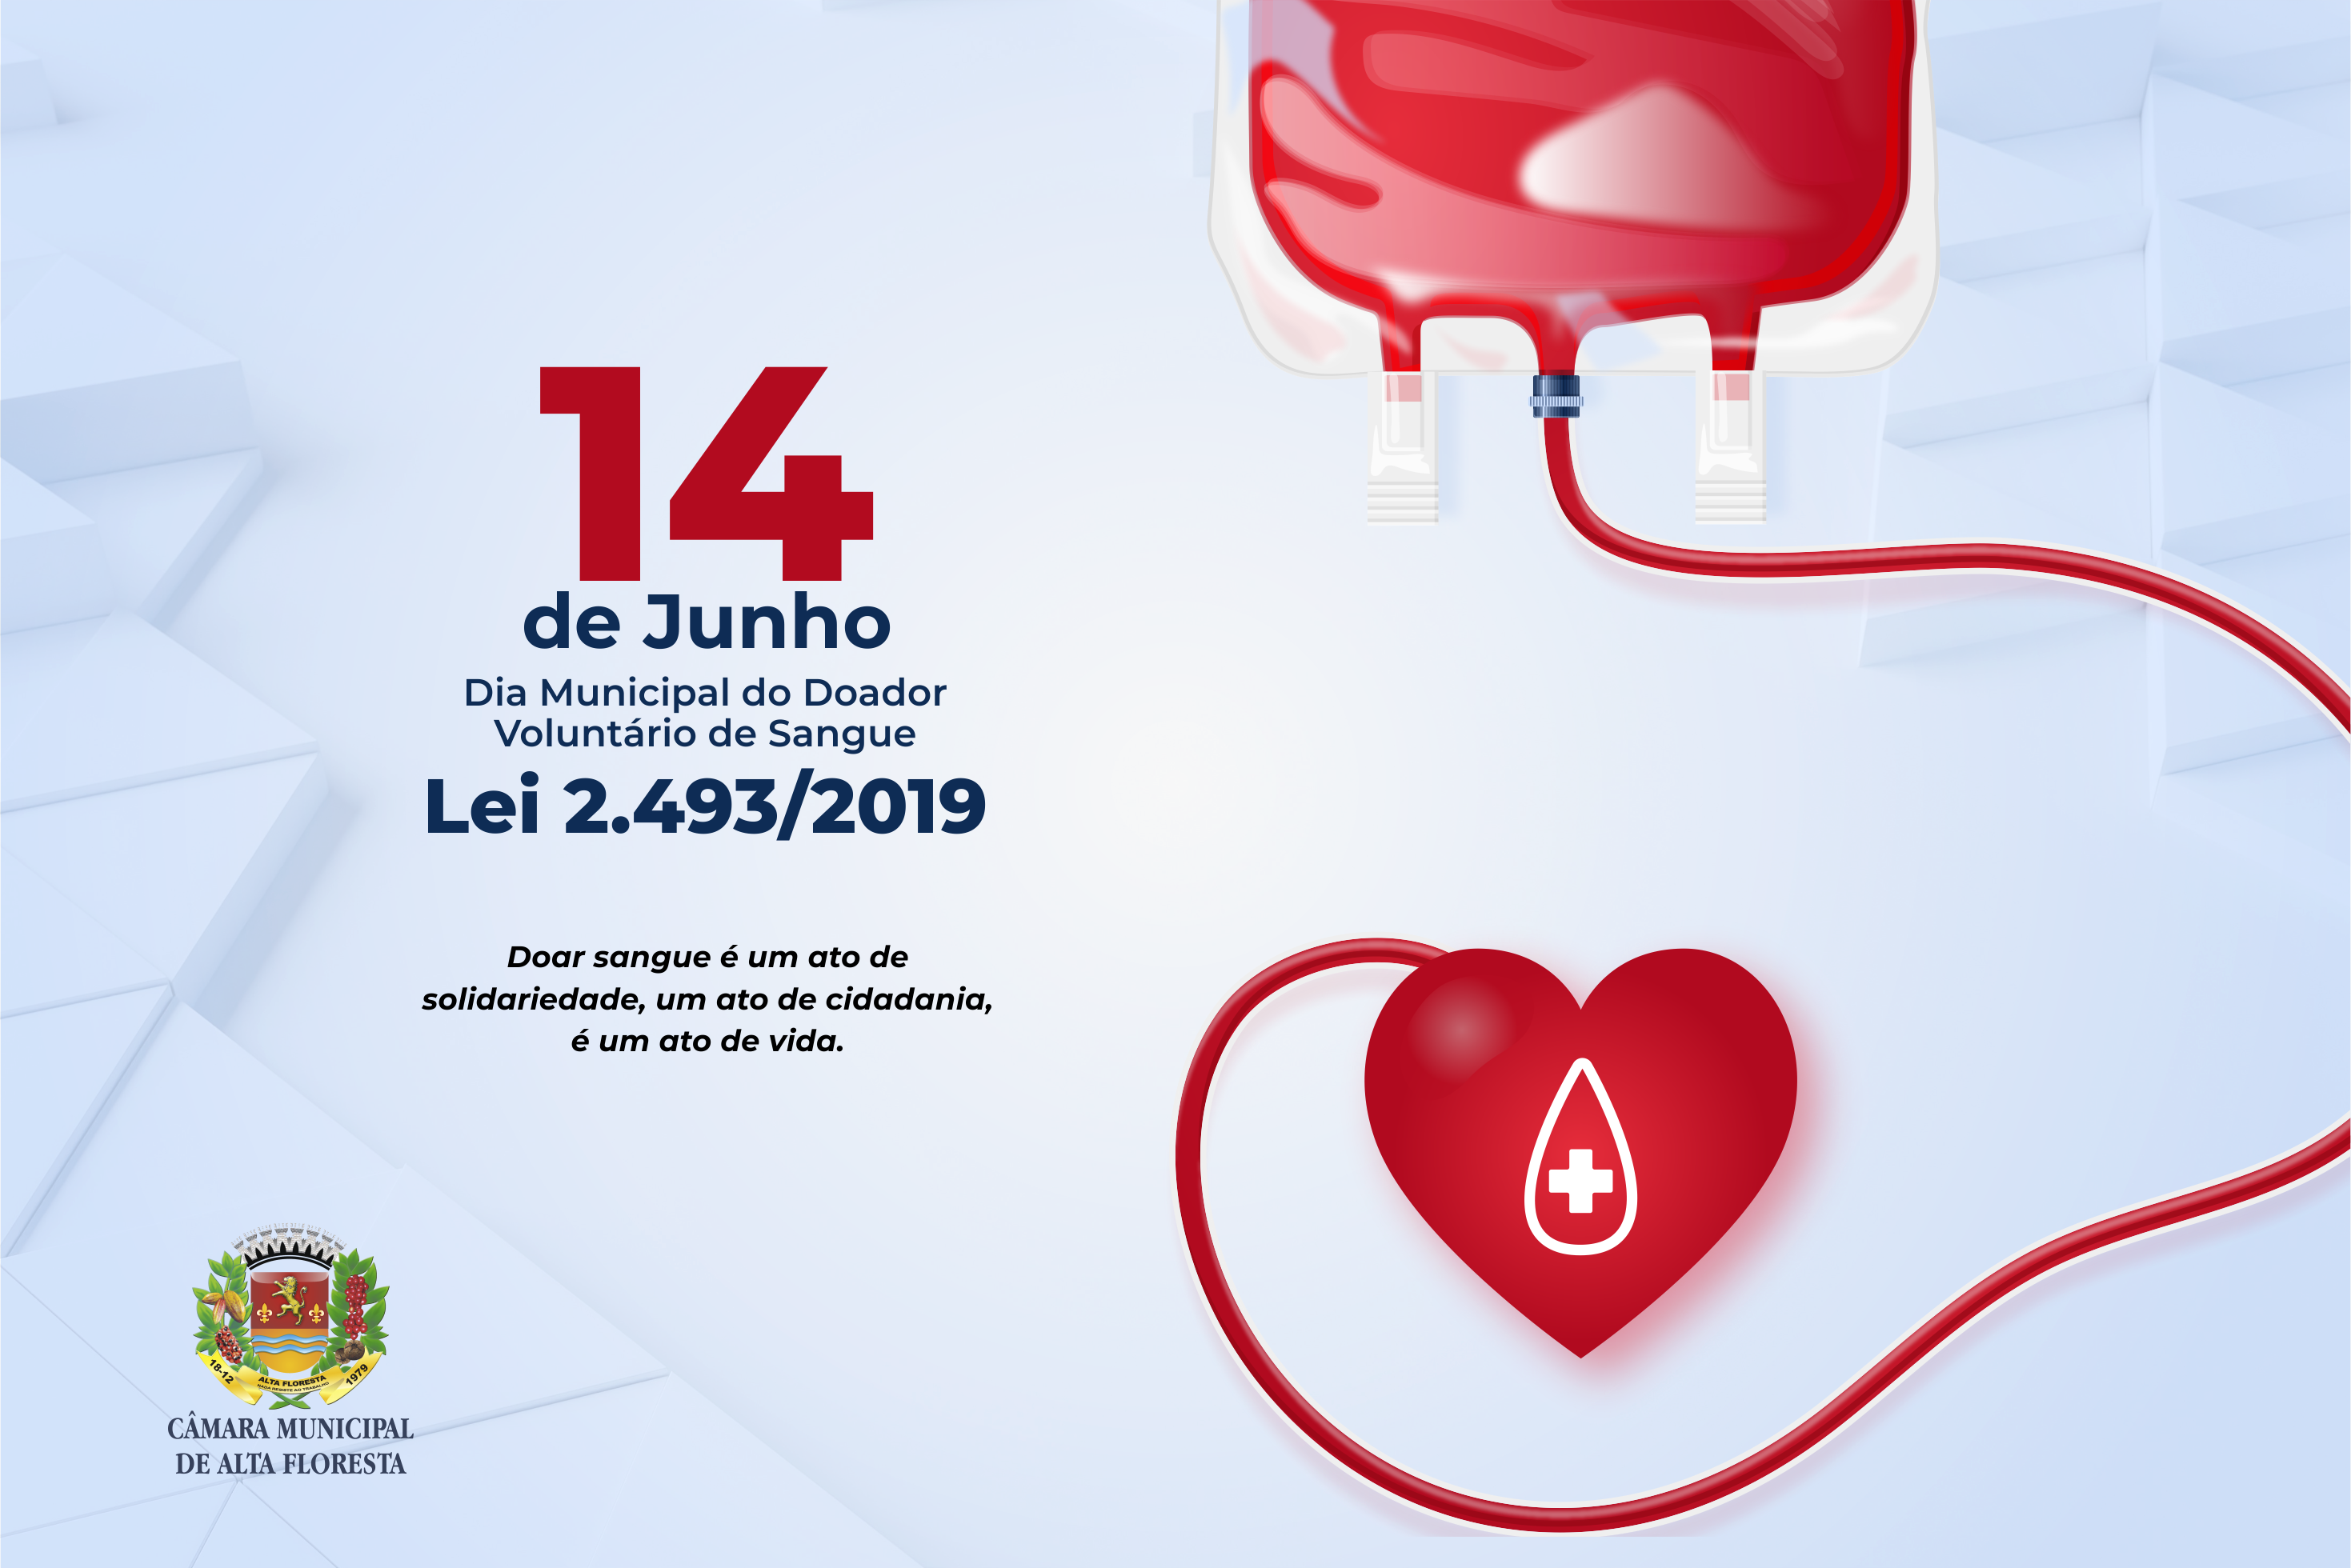 14 de junho é Dia Municipal do Doador Voluntário de Sangue